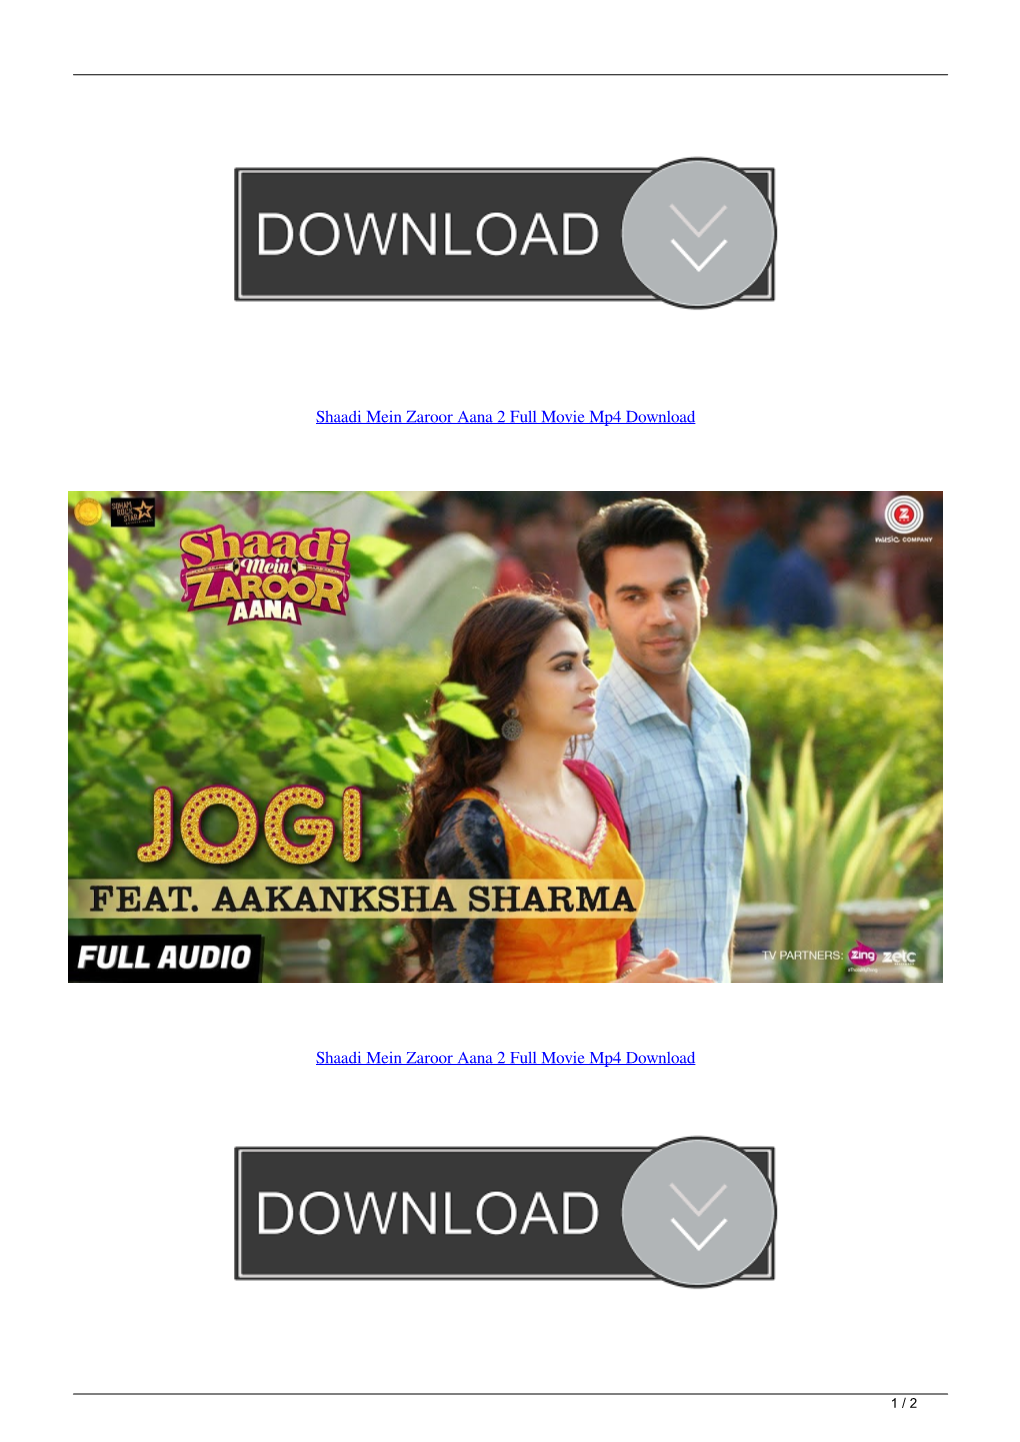 Shaadi Mein Zaroor Aana 2 Full Movie Mp4 Download